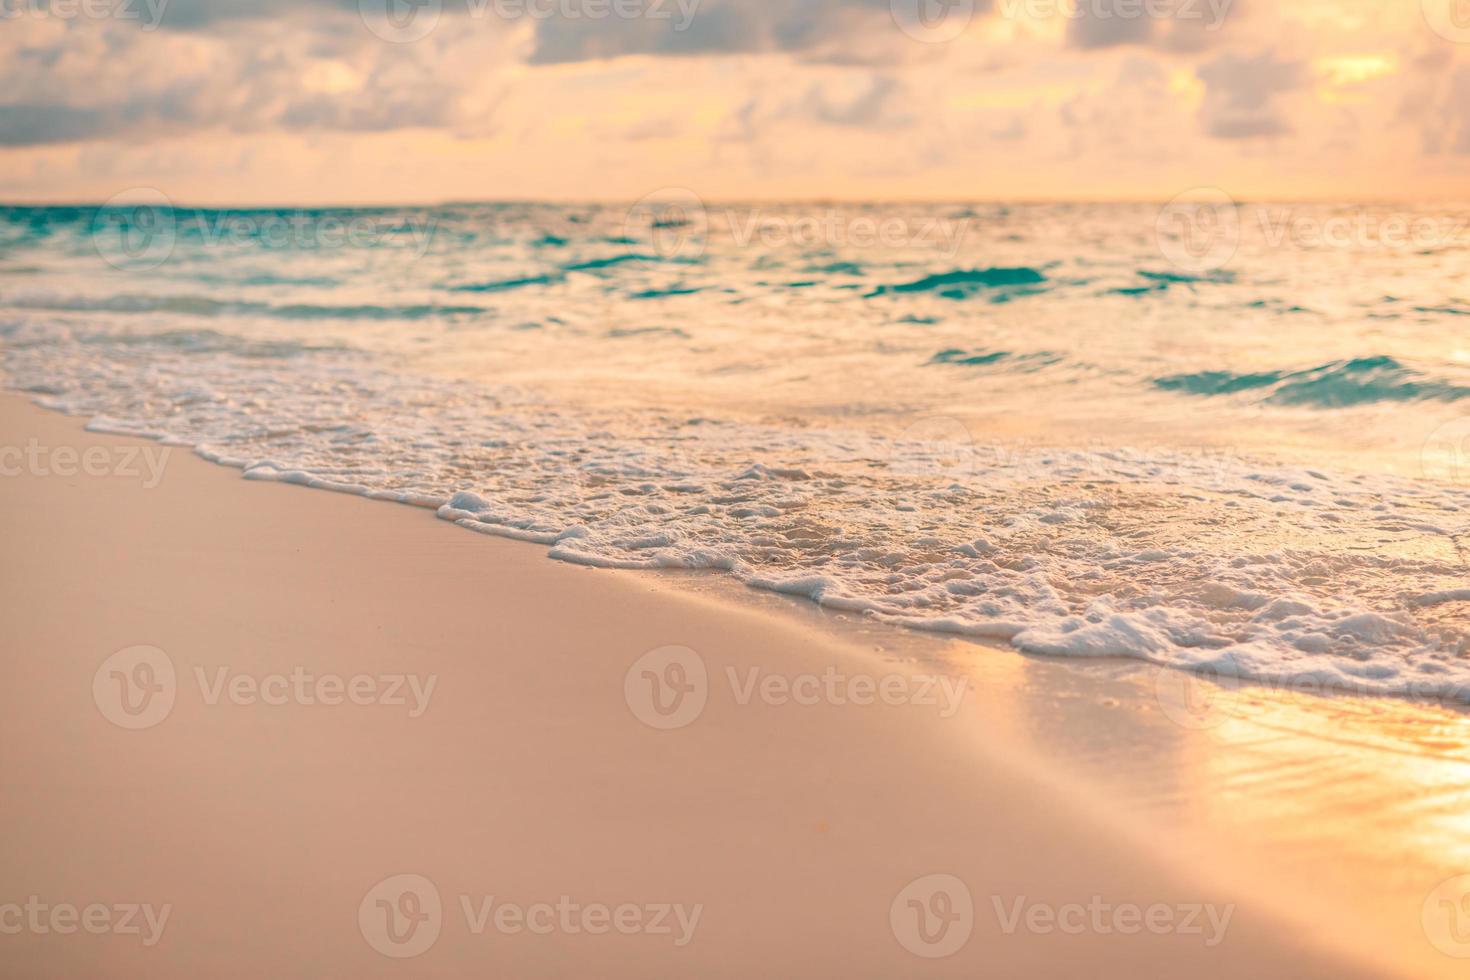 Nahaufnahme Meer Sandstrand. Panorama Strandlandschaft. inspirieren tropischen Strand Meerblick Horizont. orange und golden sonnenuntergang himmel ruhe ruhige entspannende sonnenlicht sommerstimmung. urlaub reisen urlaub banner foto